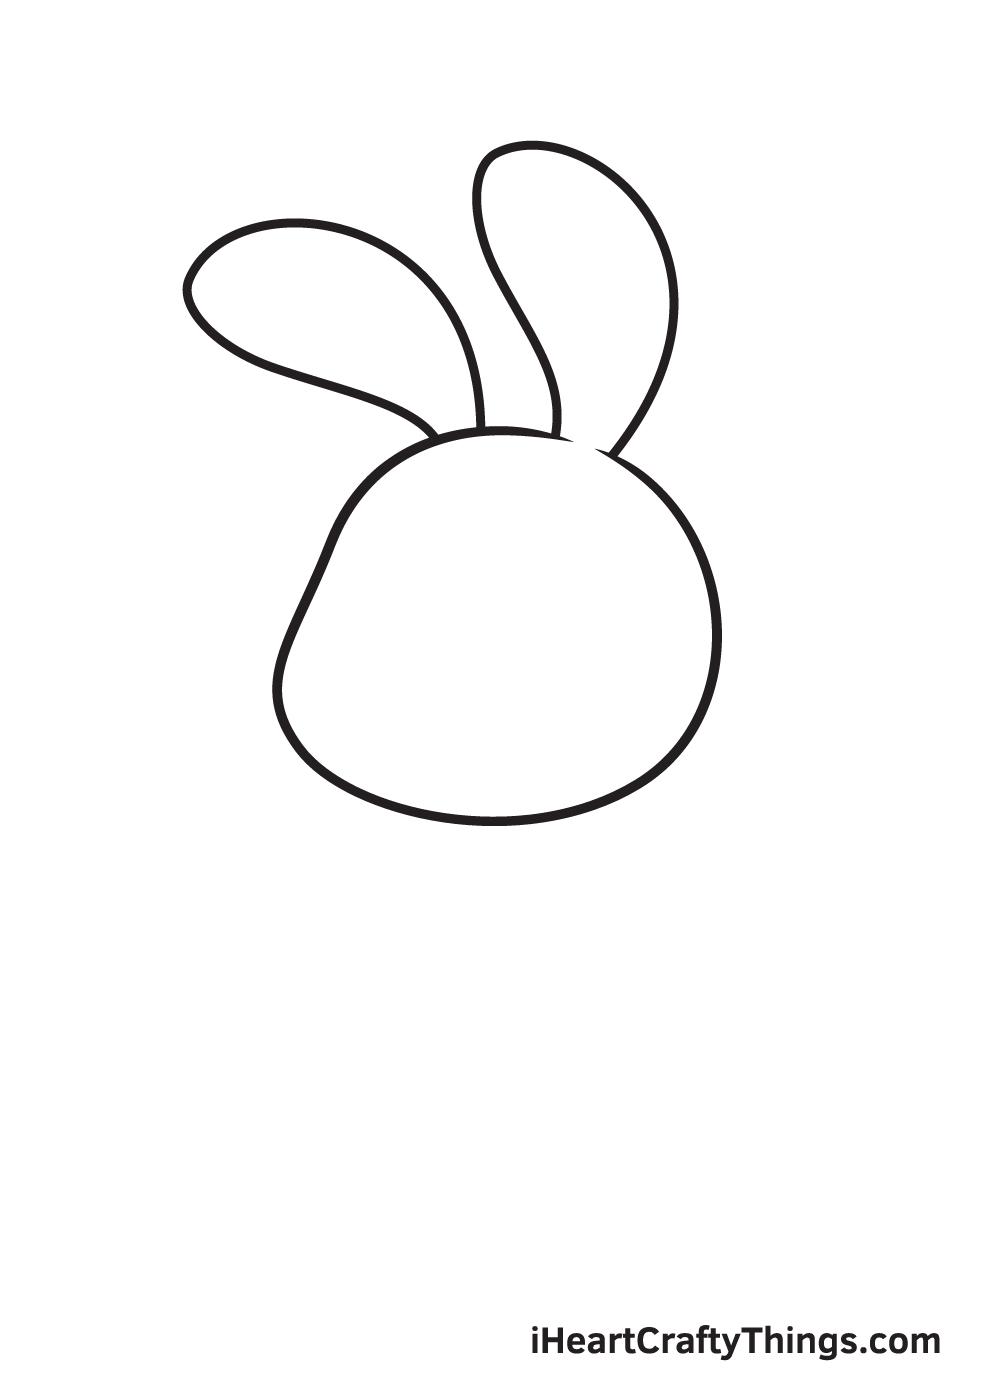 Hướng dẫn cách vẽ con thỏ đơn giản với 9 bước cơ bản - Nhà Đẹp DHB